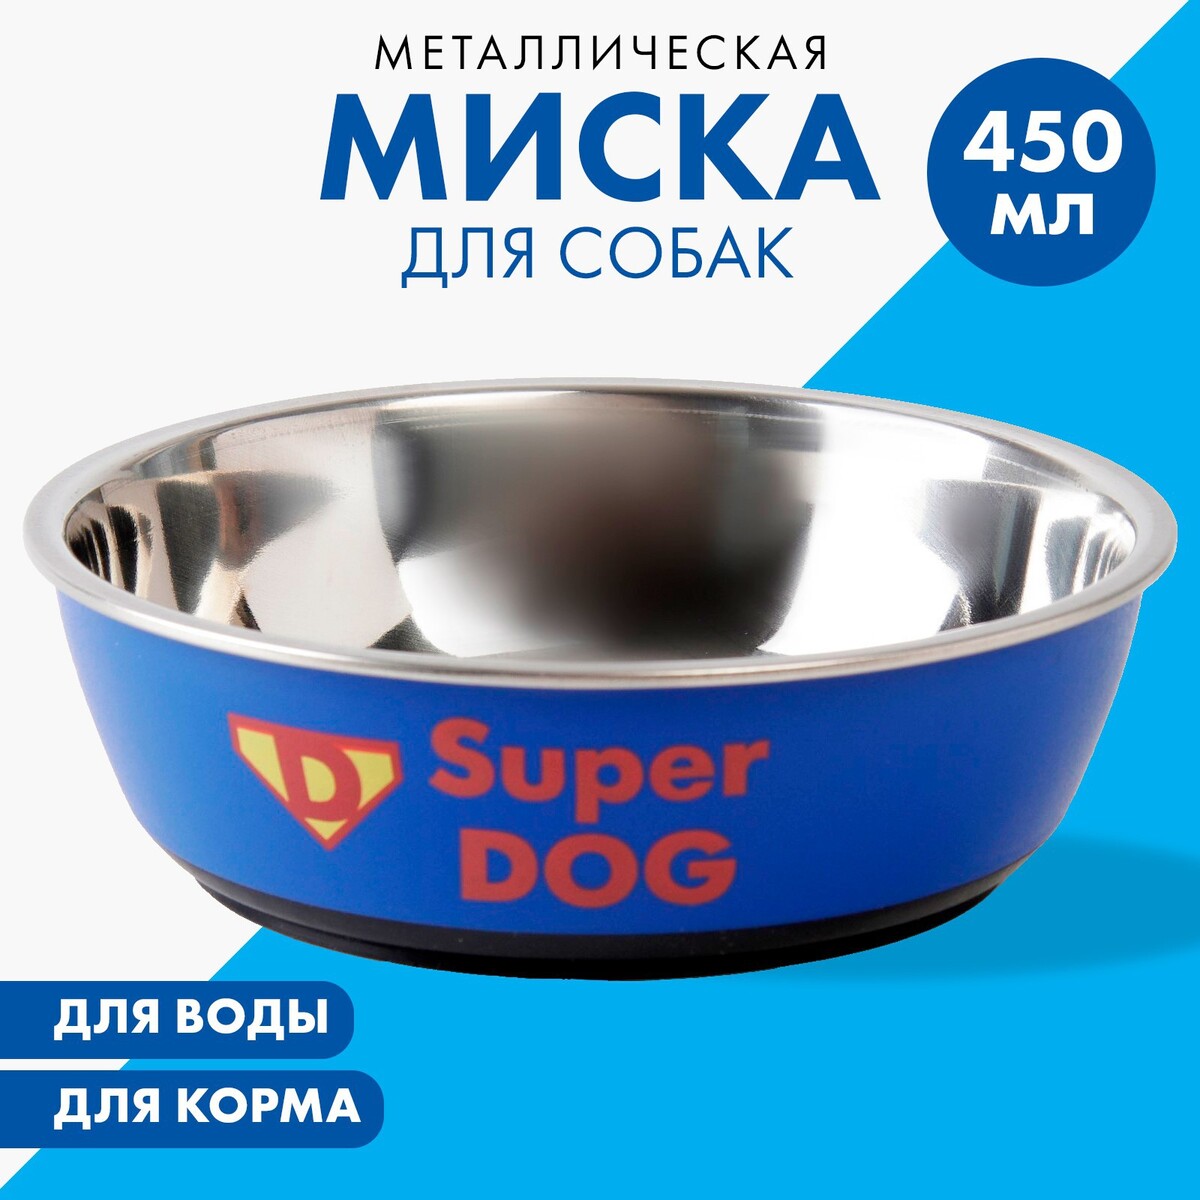 Миска металлическая для собаки super dog, 450 мл, 14х4.5 см постер а3 собаки